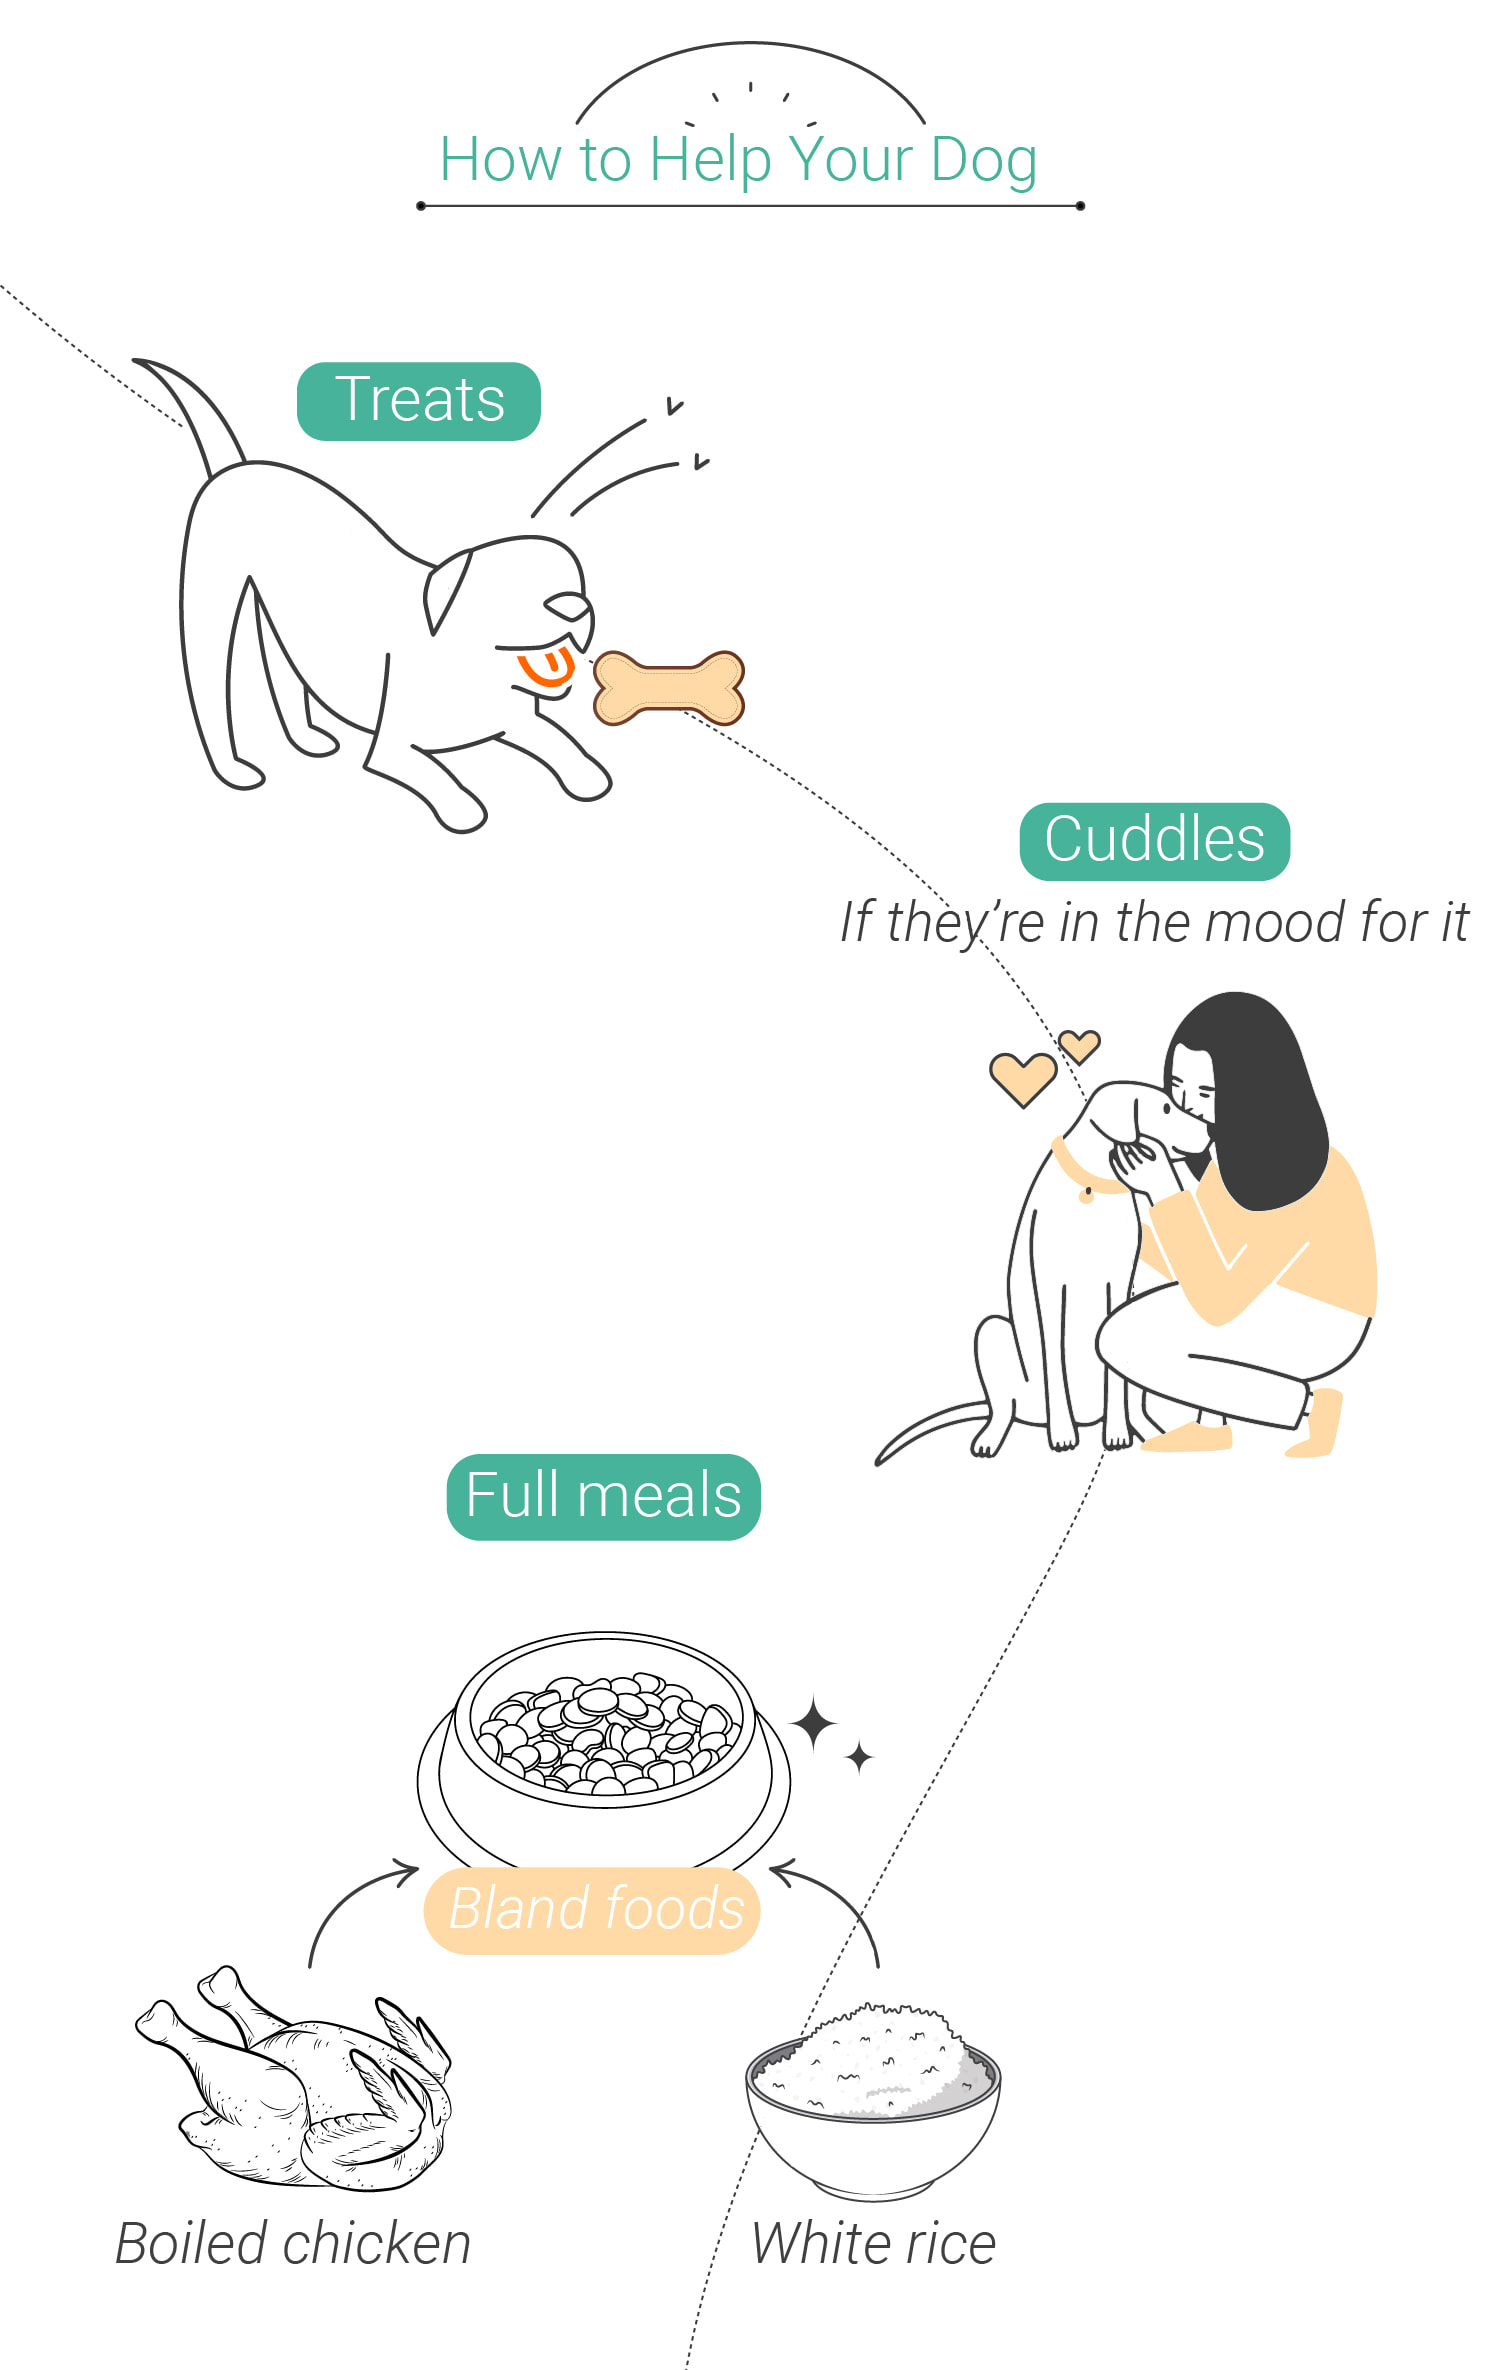 Zwierzęta i konopie: co zrobić, jeśli Twój pies jest na haju